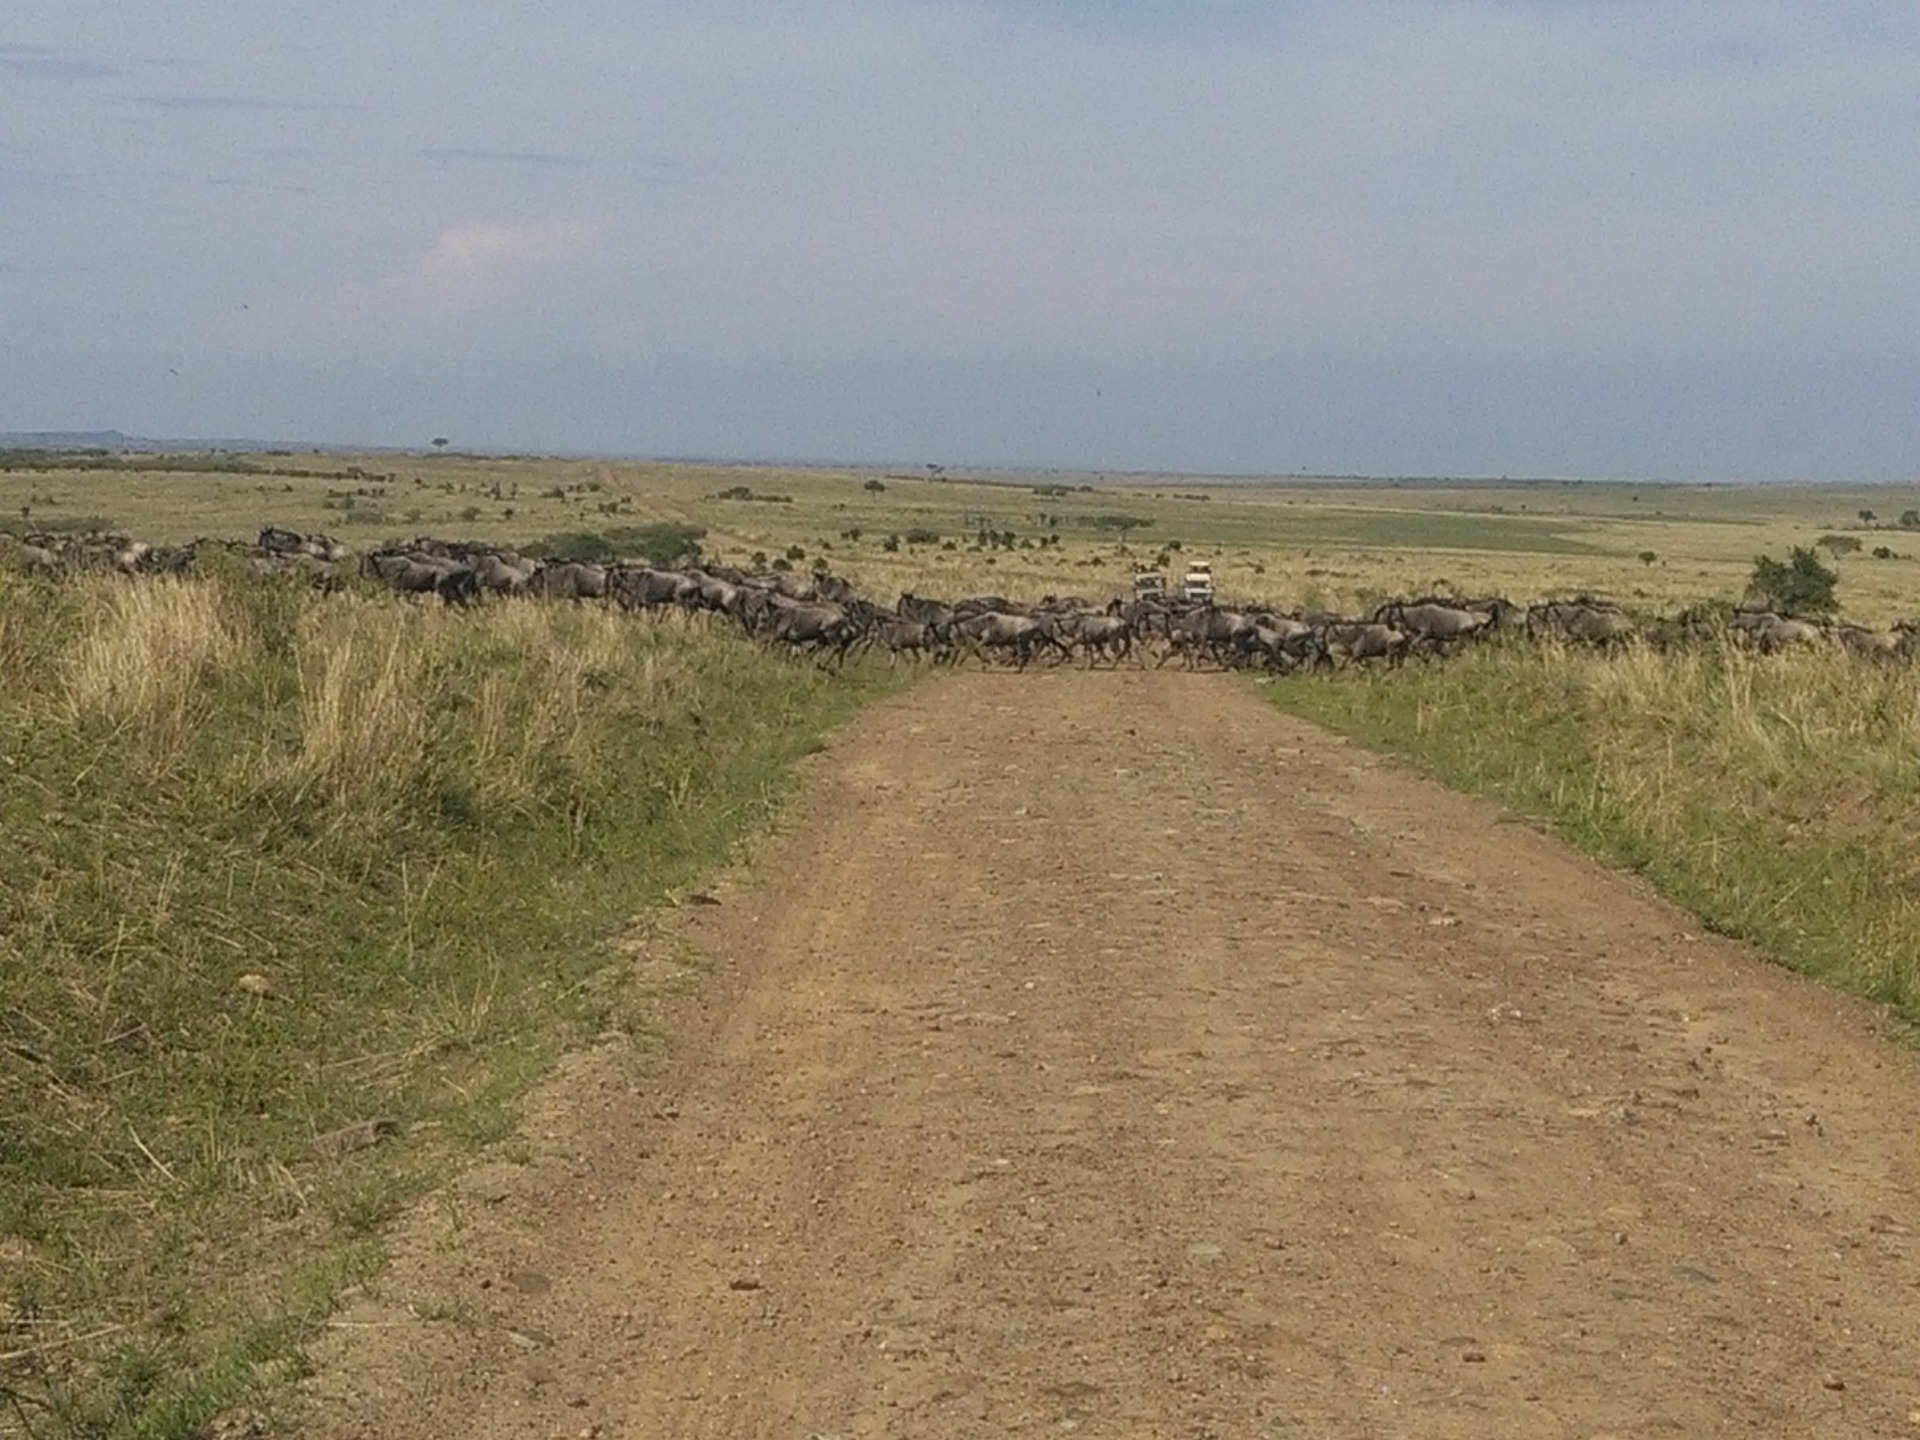 Epic Kenya Adventure Safaris, YHA Kenya Travel Tours And Safaris, Wildebeests Migration Masai Mara Kenya, Budget Safaris.